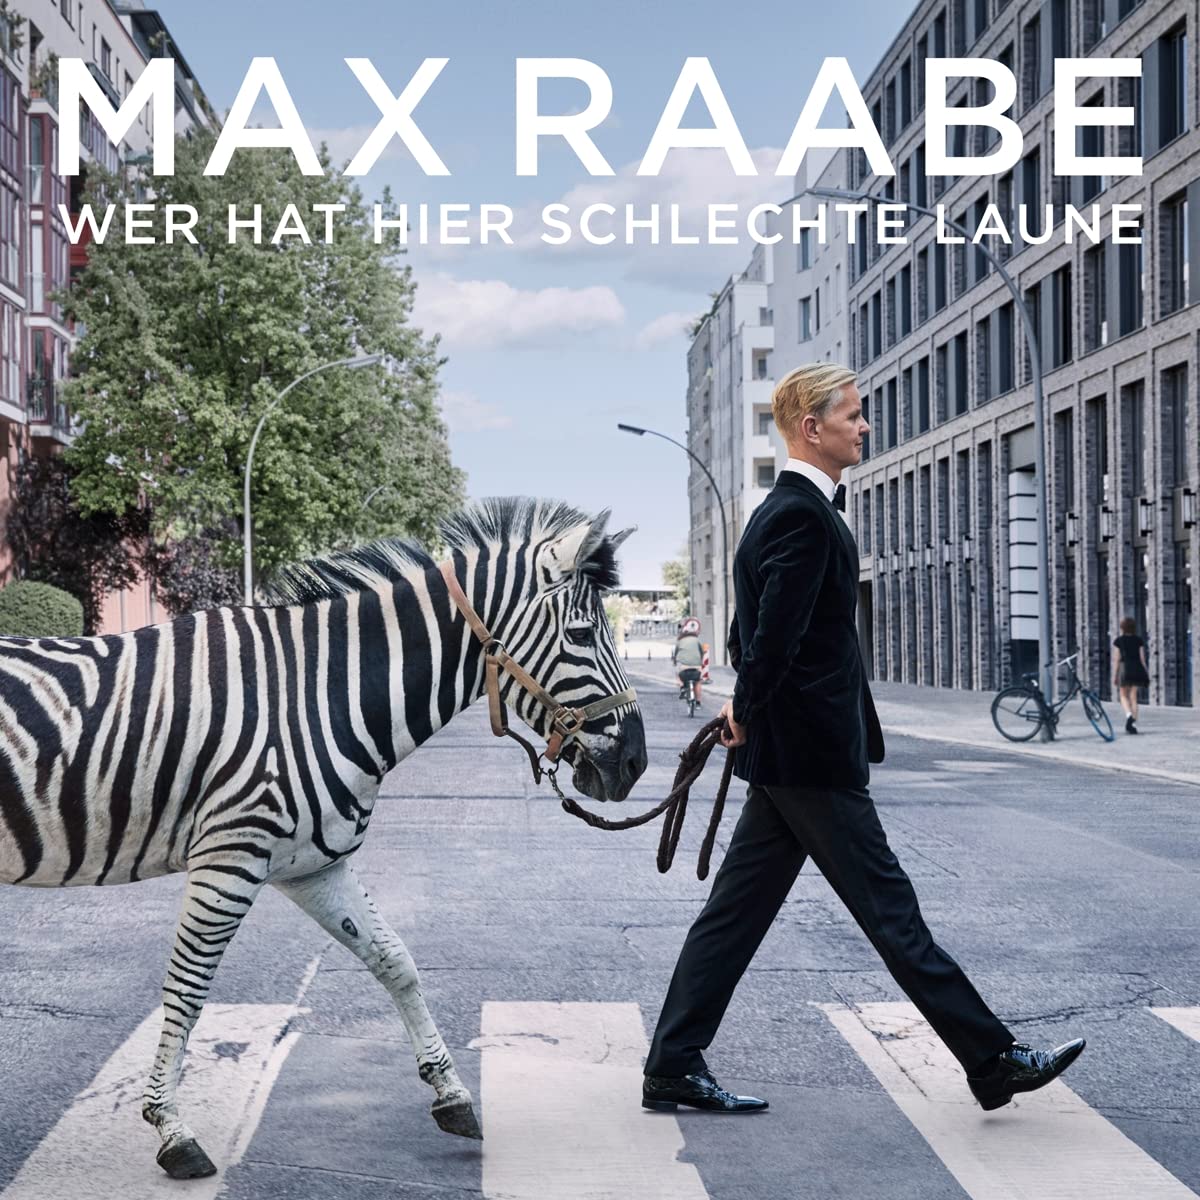 Max Raabe Schlechte Laune